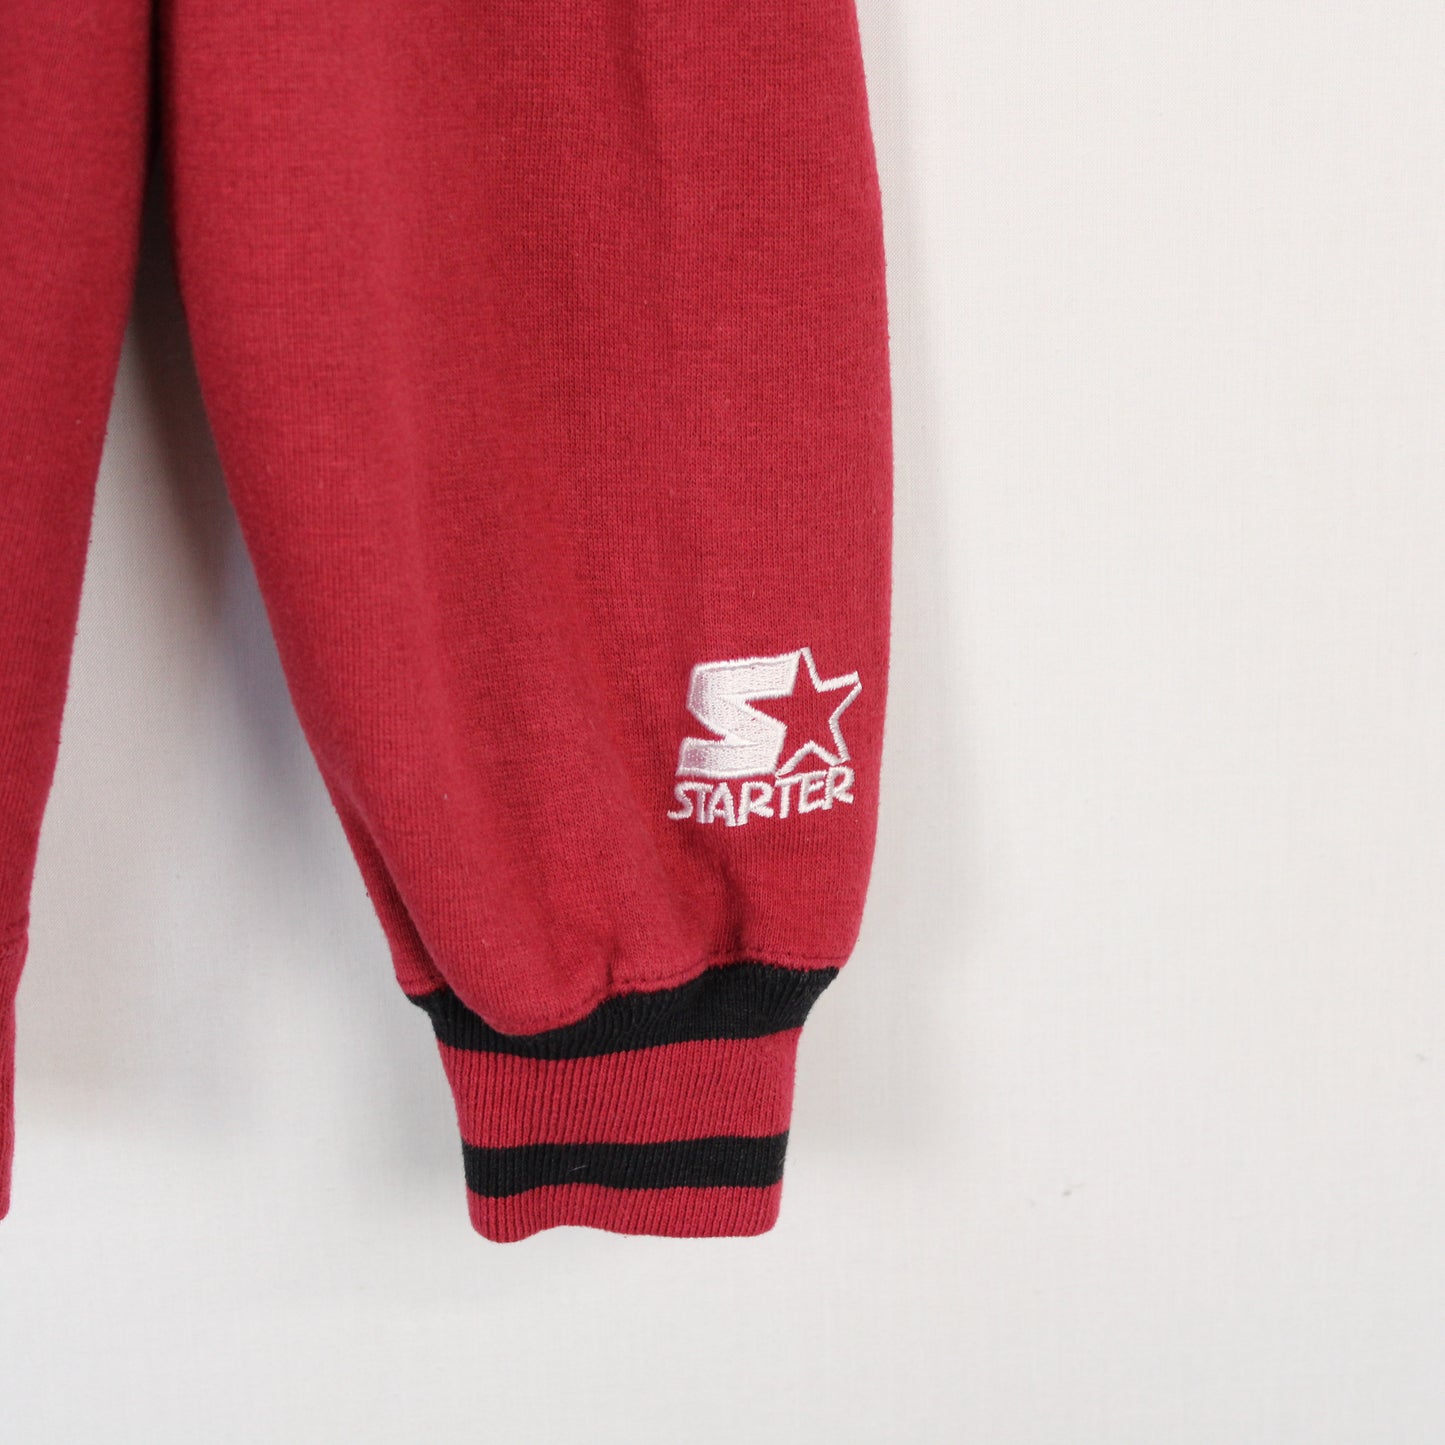 Vintage San Francisco 49ers NFL Starter Sweatshirt - L